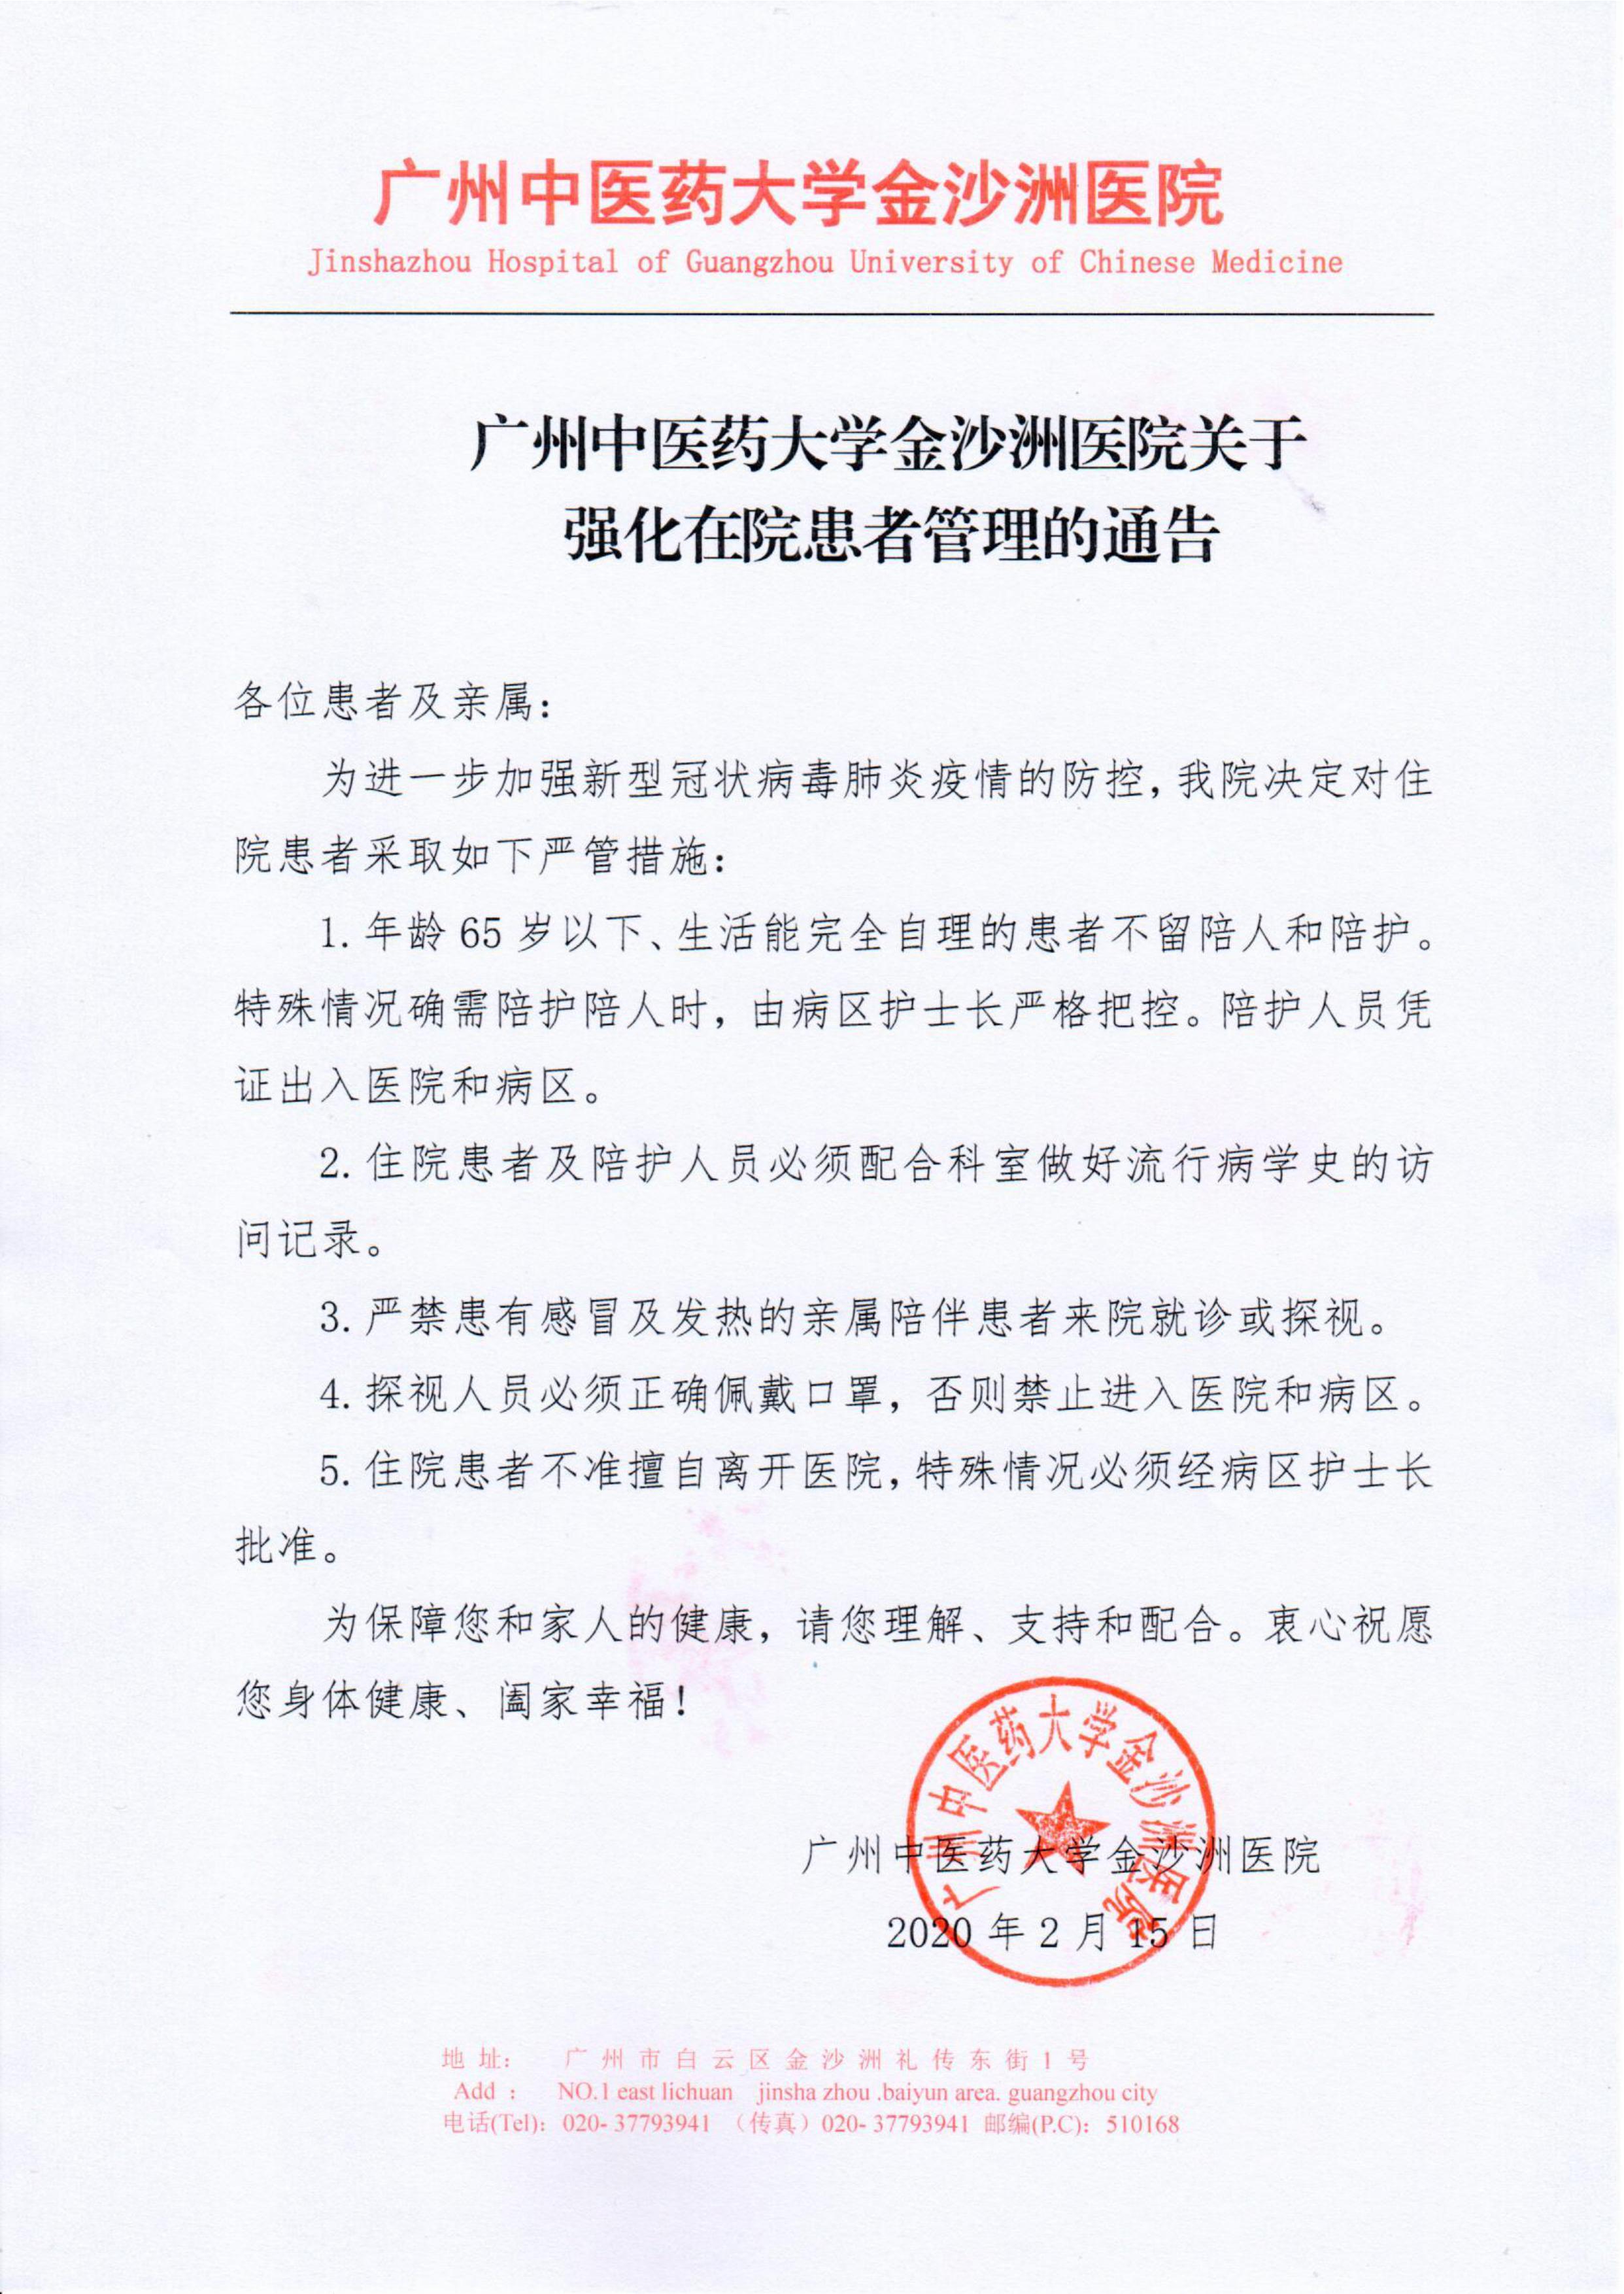 广州中医药大学金沙洲医院关于强化住院患者管理的通告